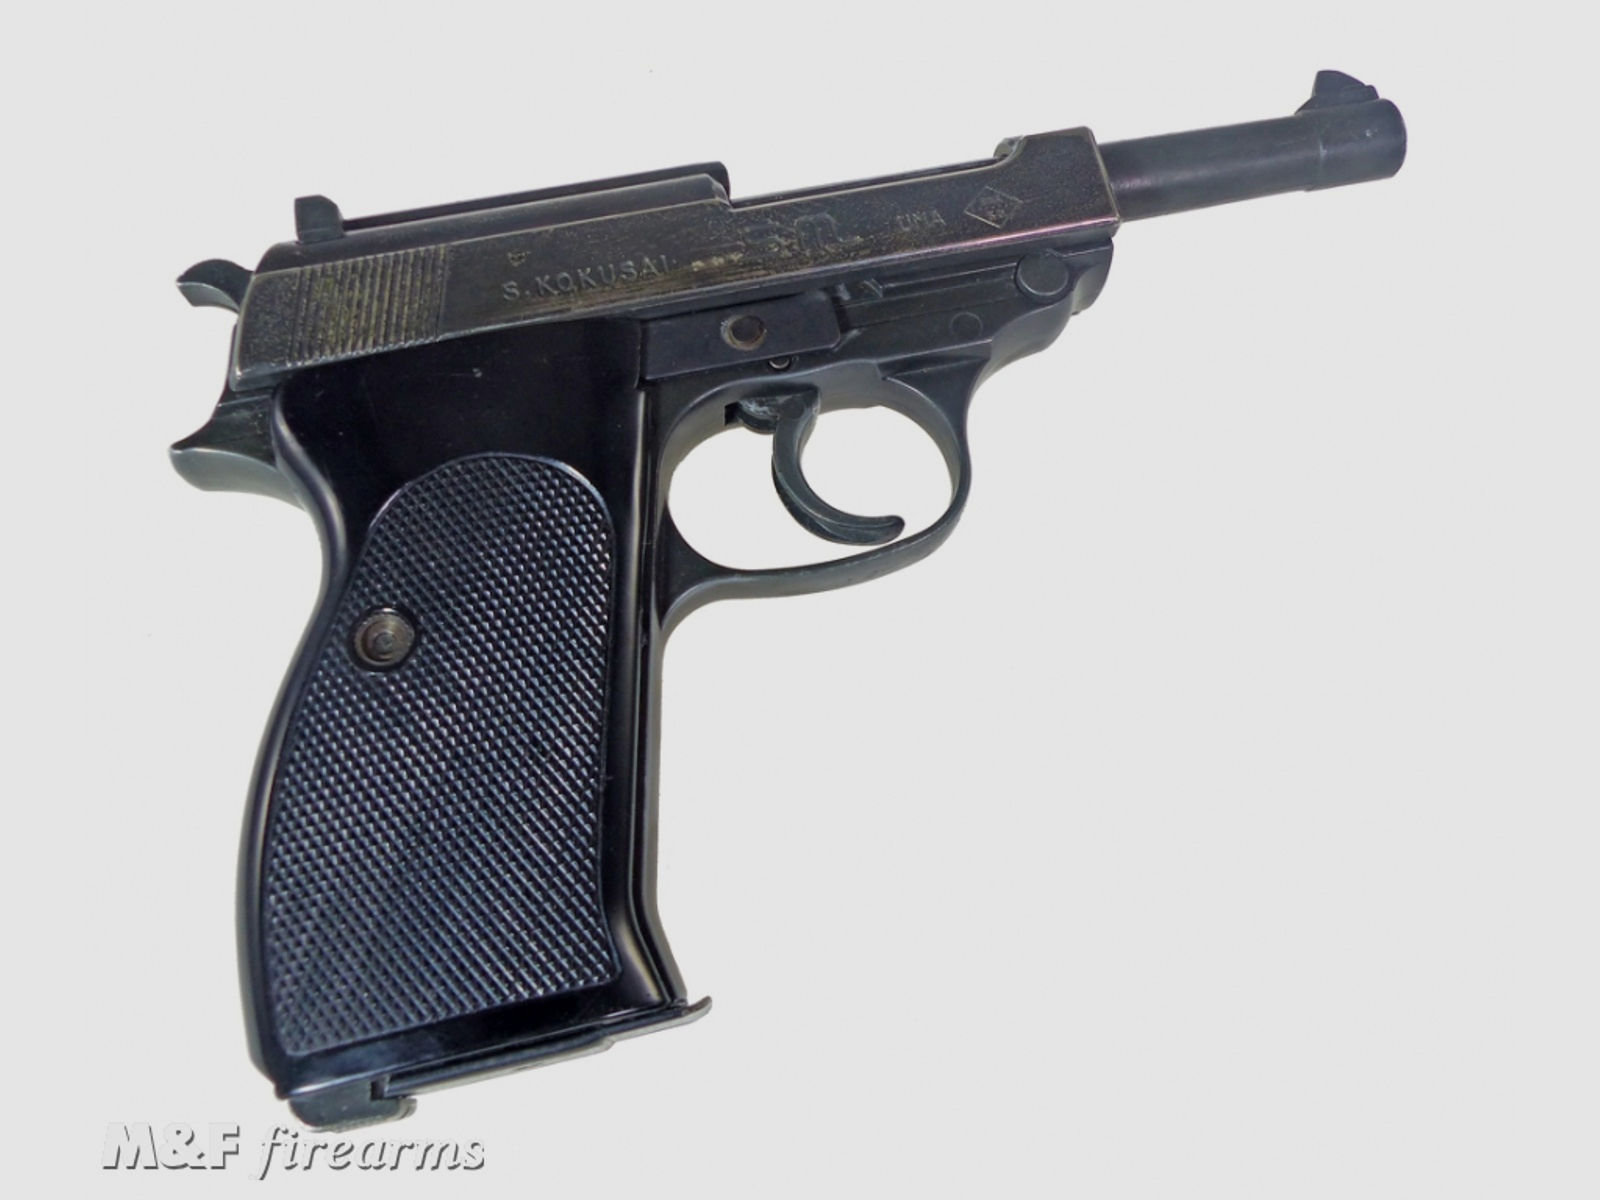 Deutsche Pistole P.38 Modellwaffe (Replica) Hersteller S. KOKUSAI